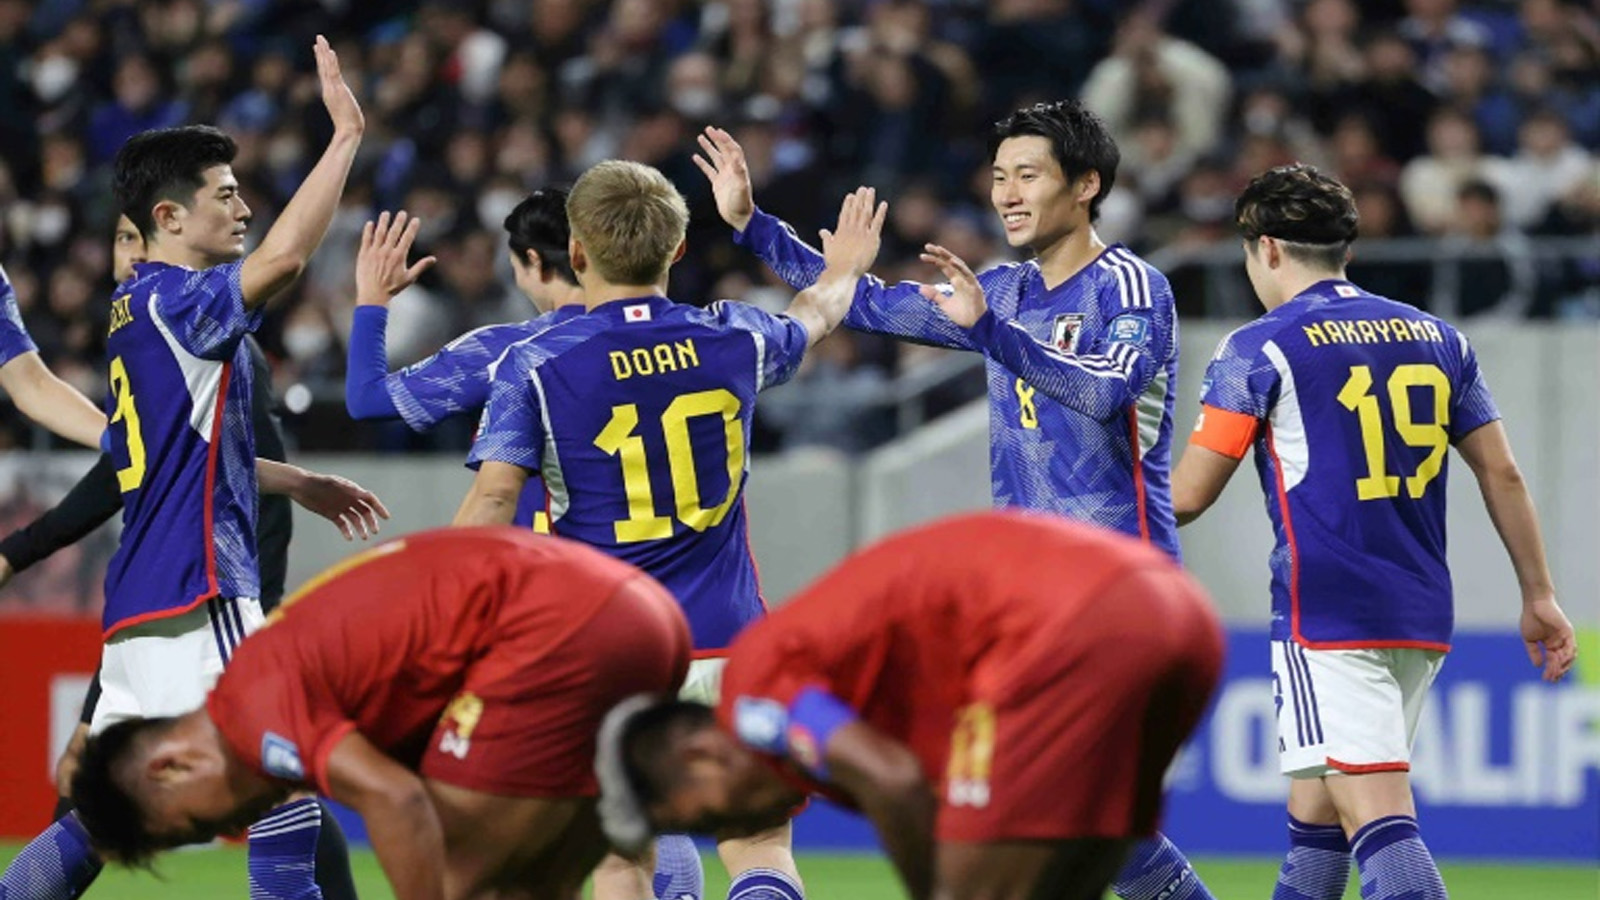 يملك منتخب اليابان أفضل سجل في تاريخ بطولات كأس آسيا في كرة القدم